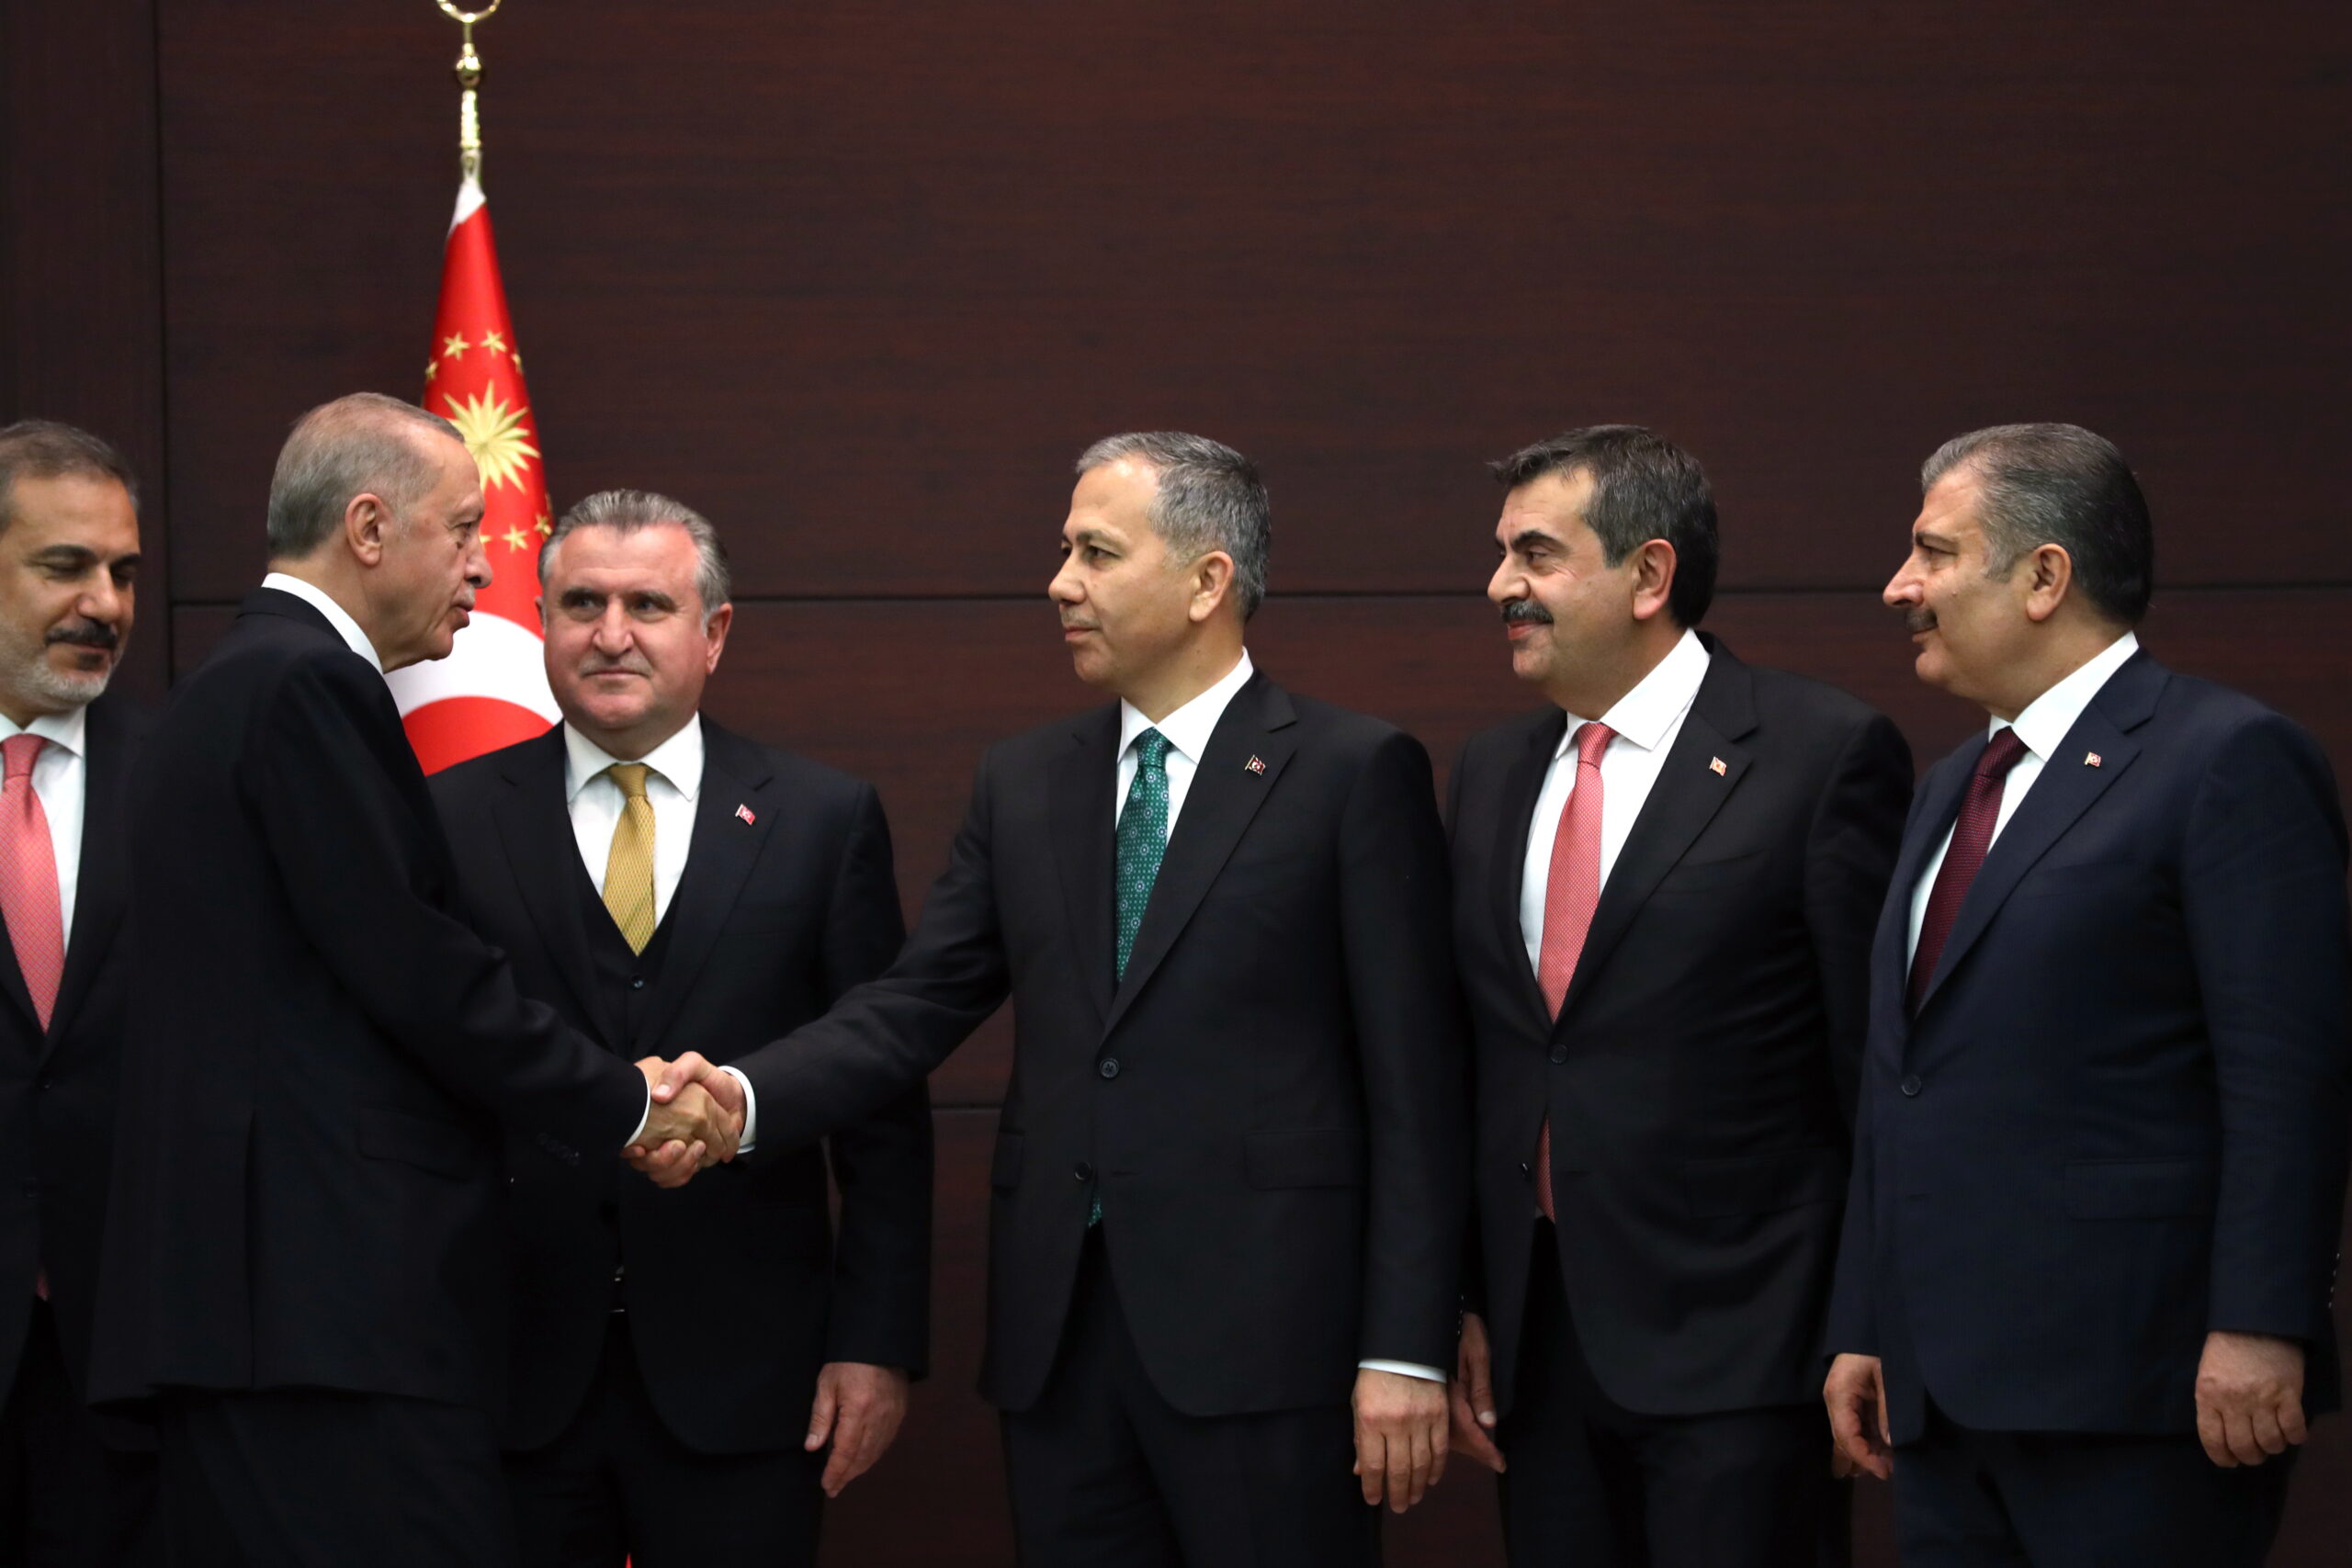 Ορκίζεται το νέο υπουργικό συμβούλιο της Τουρκίας – Mεγάλες αλλαγές στη σύνθεσή του